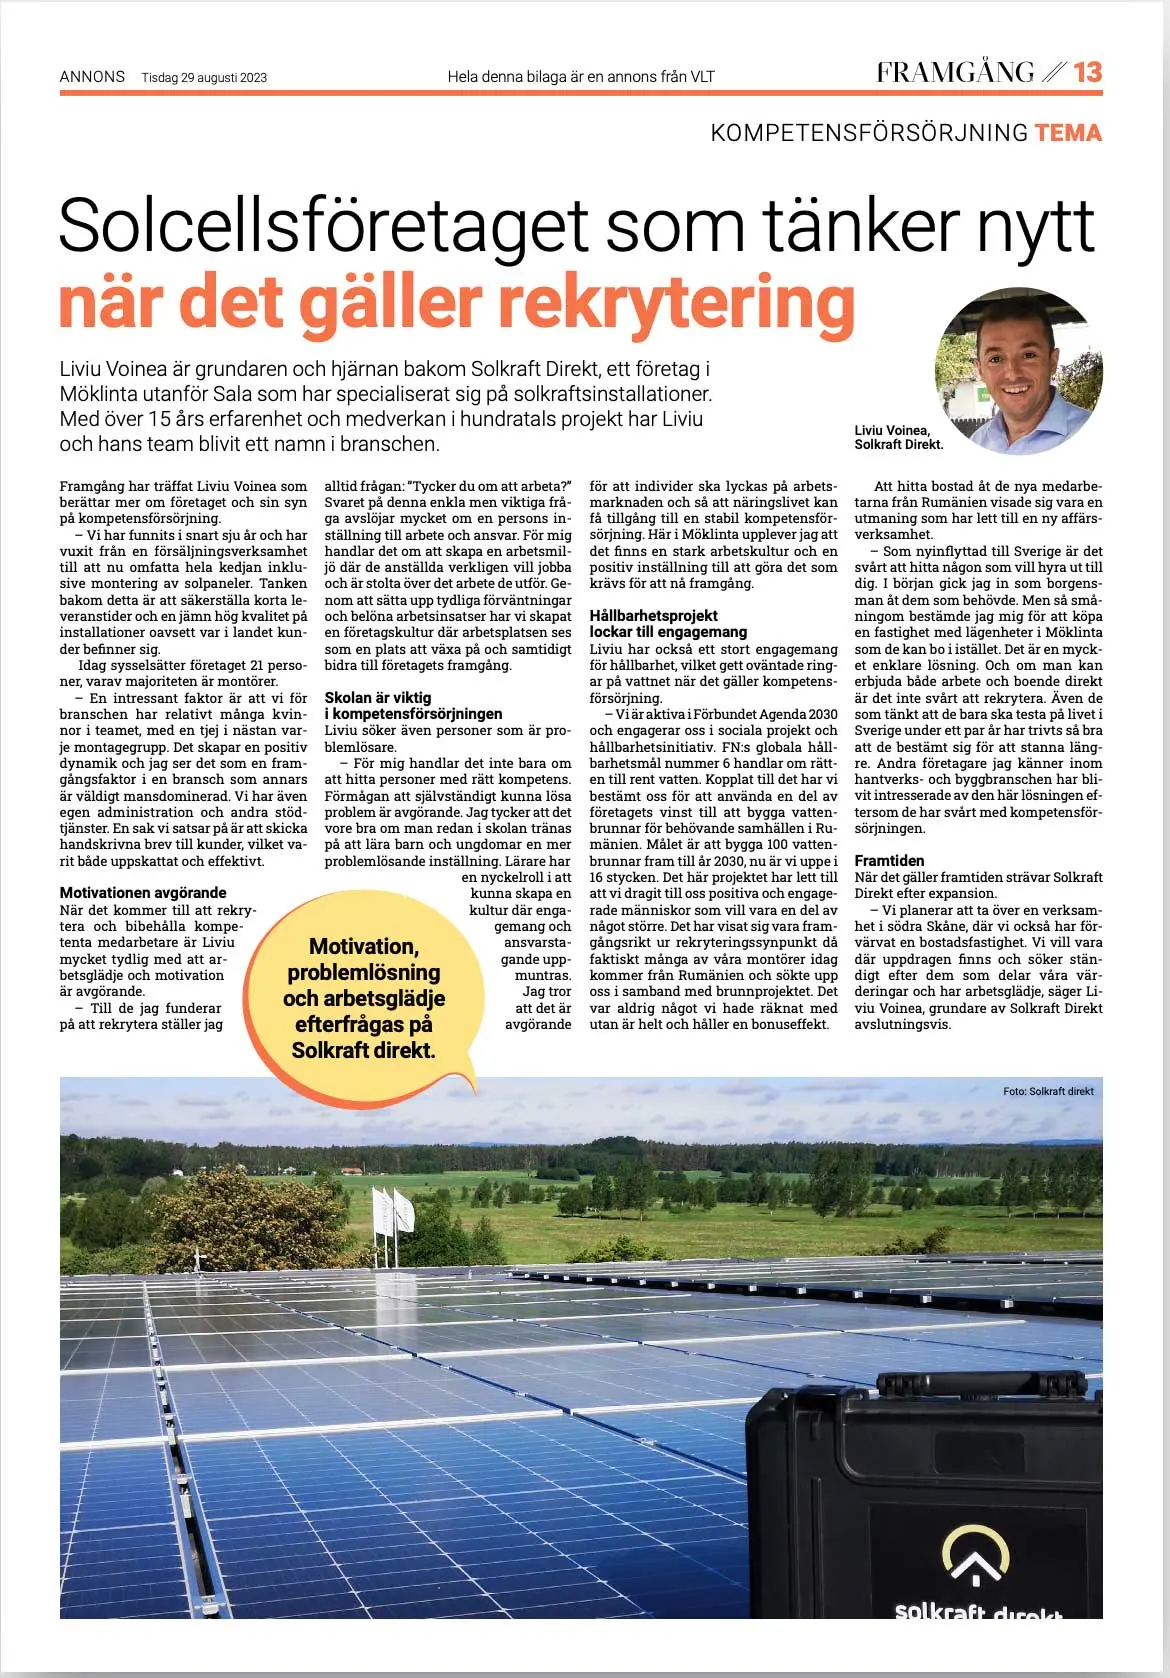 Solkraft Direkt Tidnings artikel i tidningen Framgång producerad av VLT